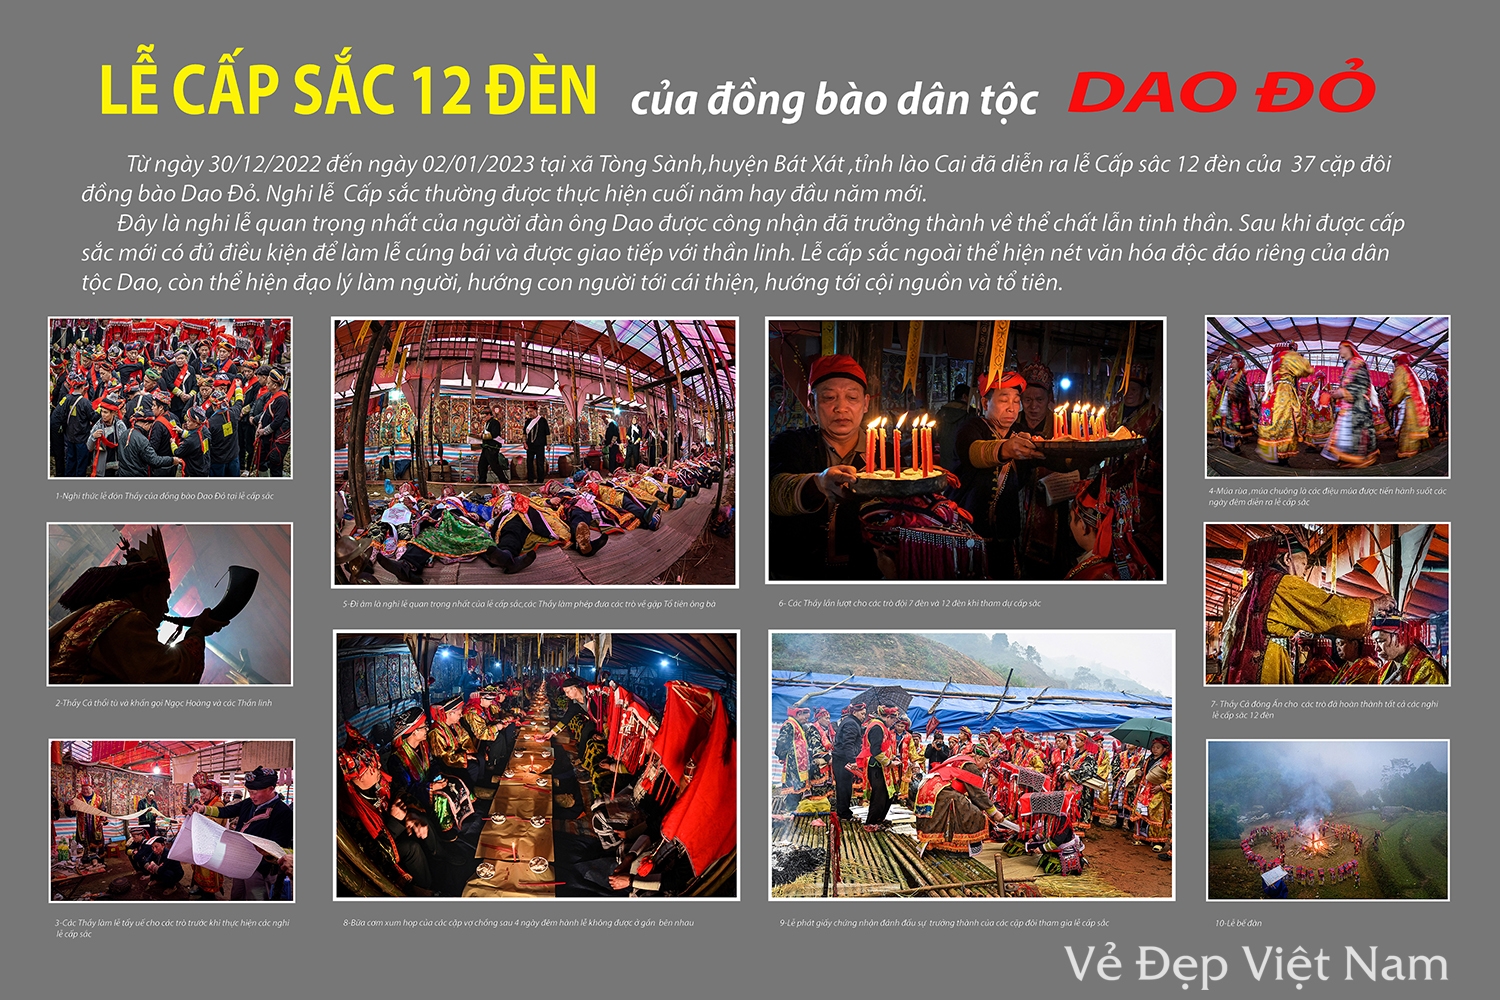 "Lễ cấp sắc 12 đèn của đồng bào dân tộc Dao Đỏ" của tác giả Kiều Anh Dũng (Thành phố Hồ Chí Minh) đồng giải Ba.(Ảnh Ban tổ chức cung cấp).